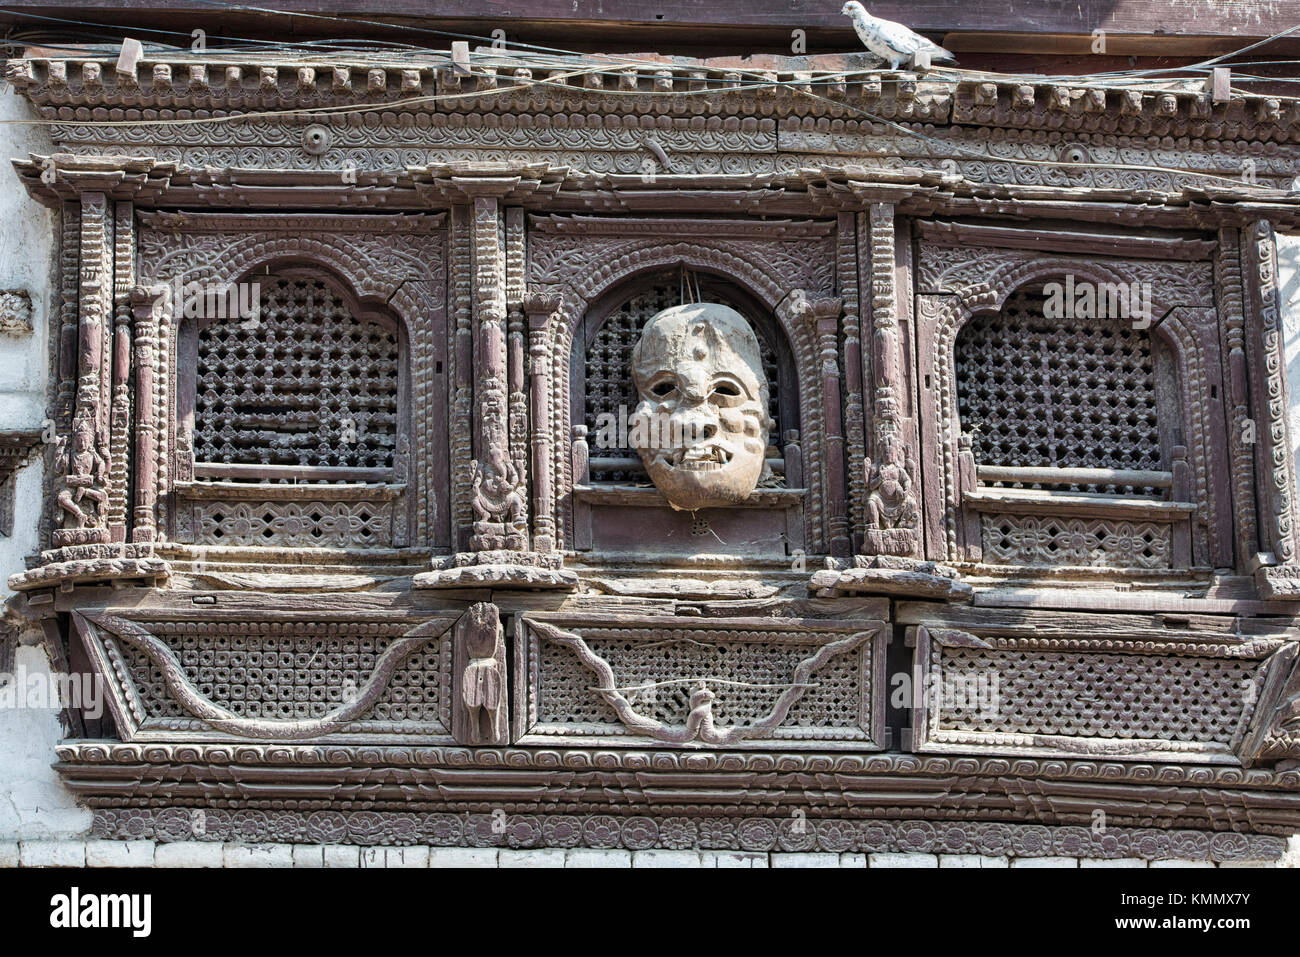 Traditional Newari architecture, Kathmandu, Nepal Stock Photo